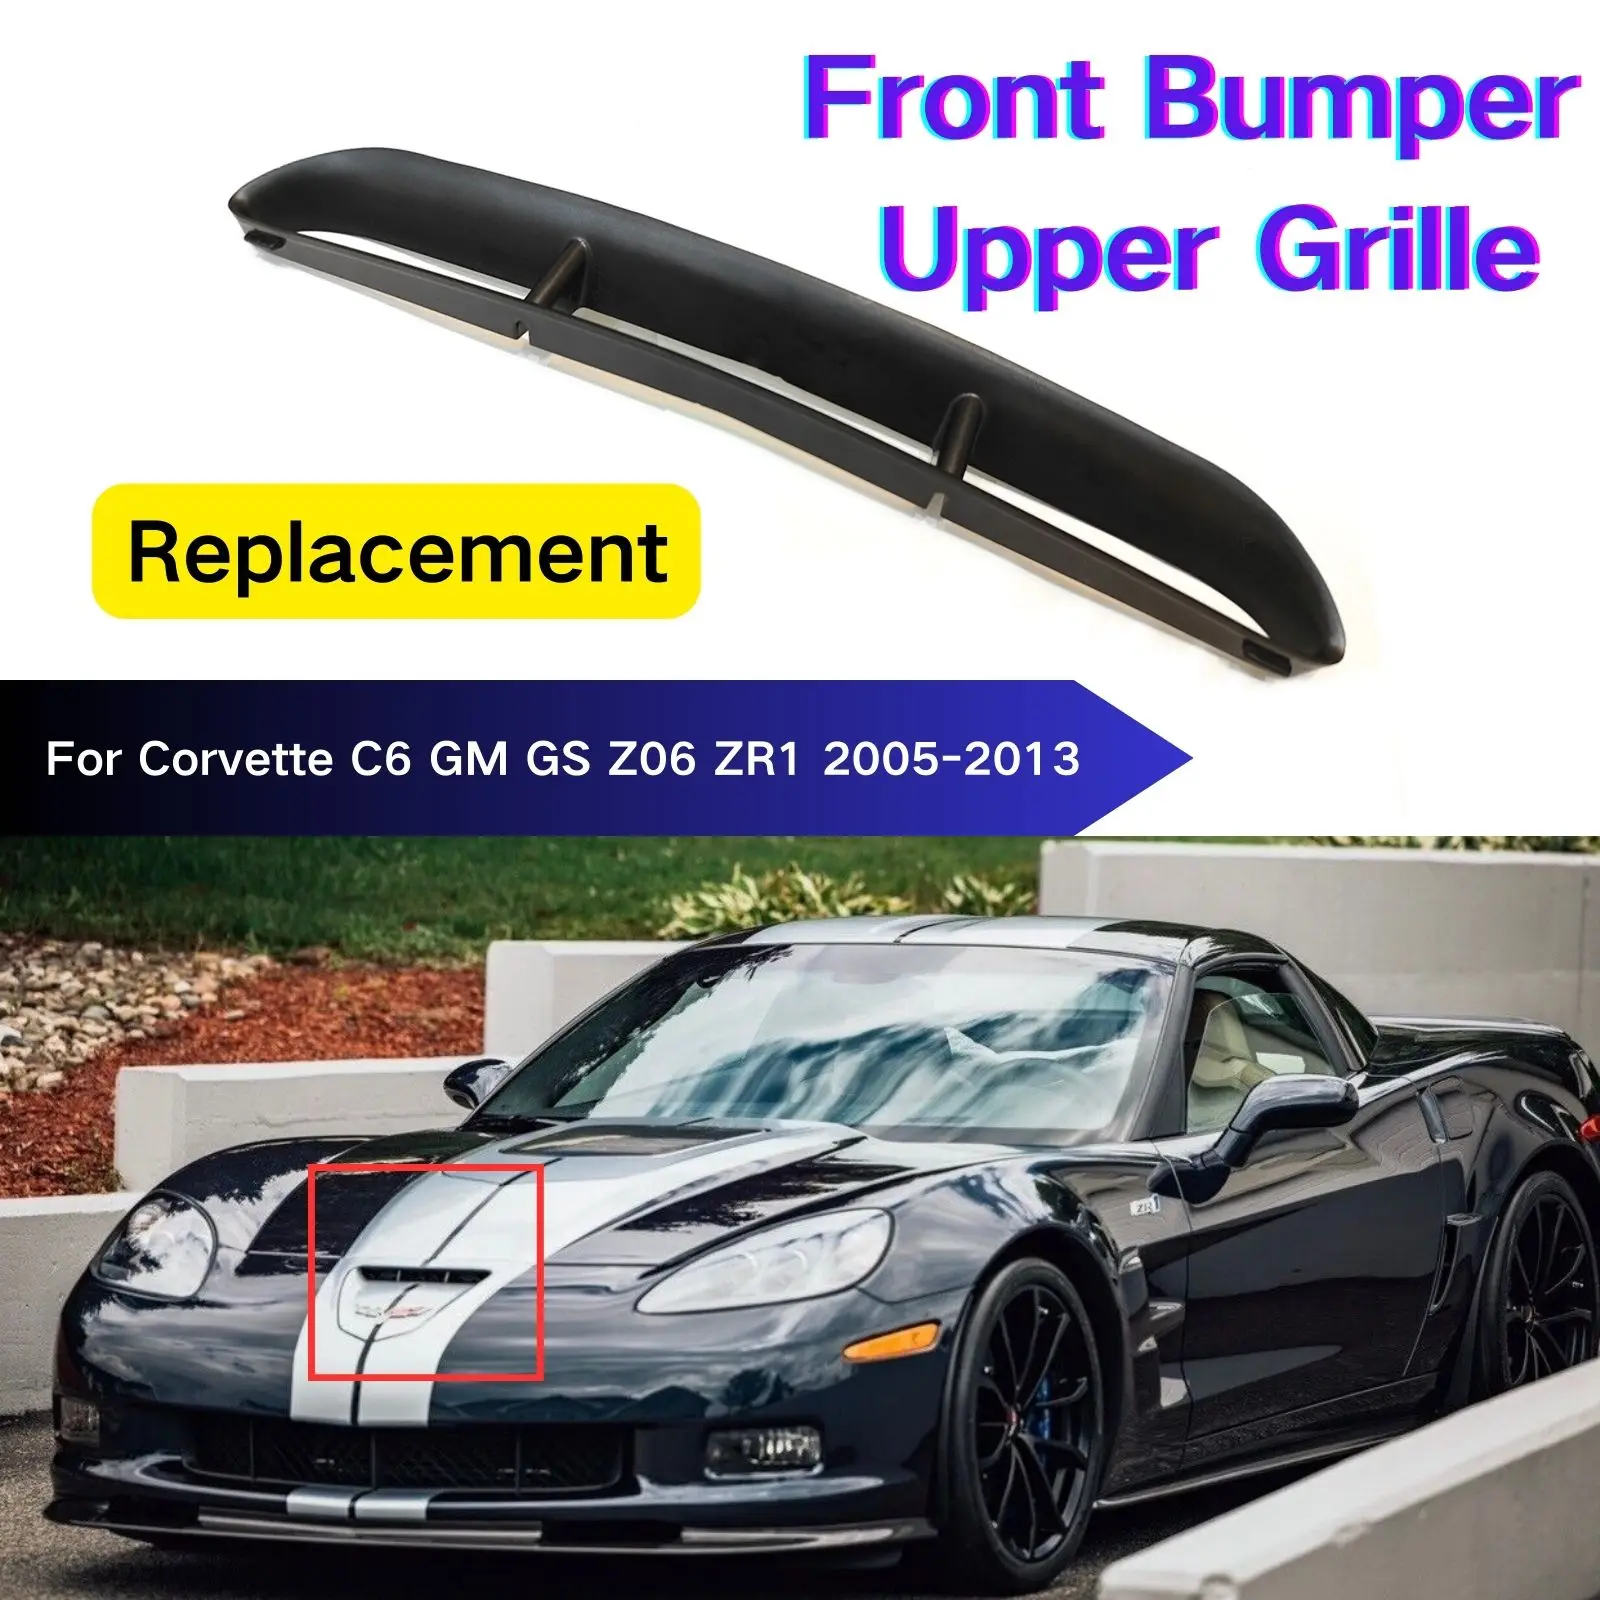 

Front Bumper Upper Grille For Corvette C6 GM GS Z06 ZR1 2005-2013 Replacement Trim Hood Vent Wide Body Carbon Fiber Look